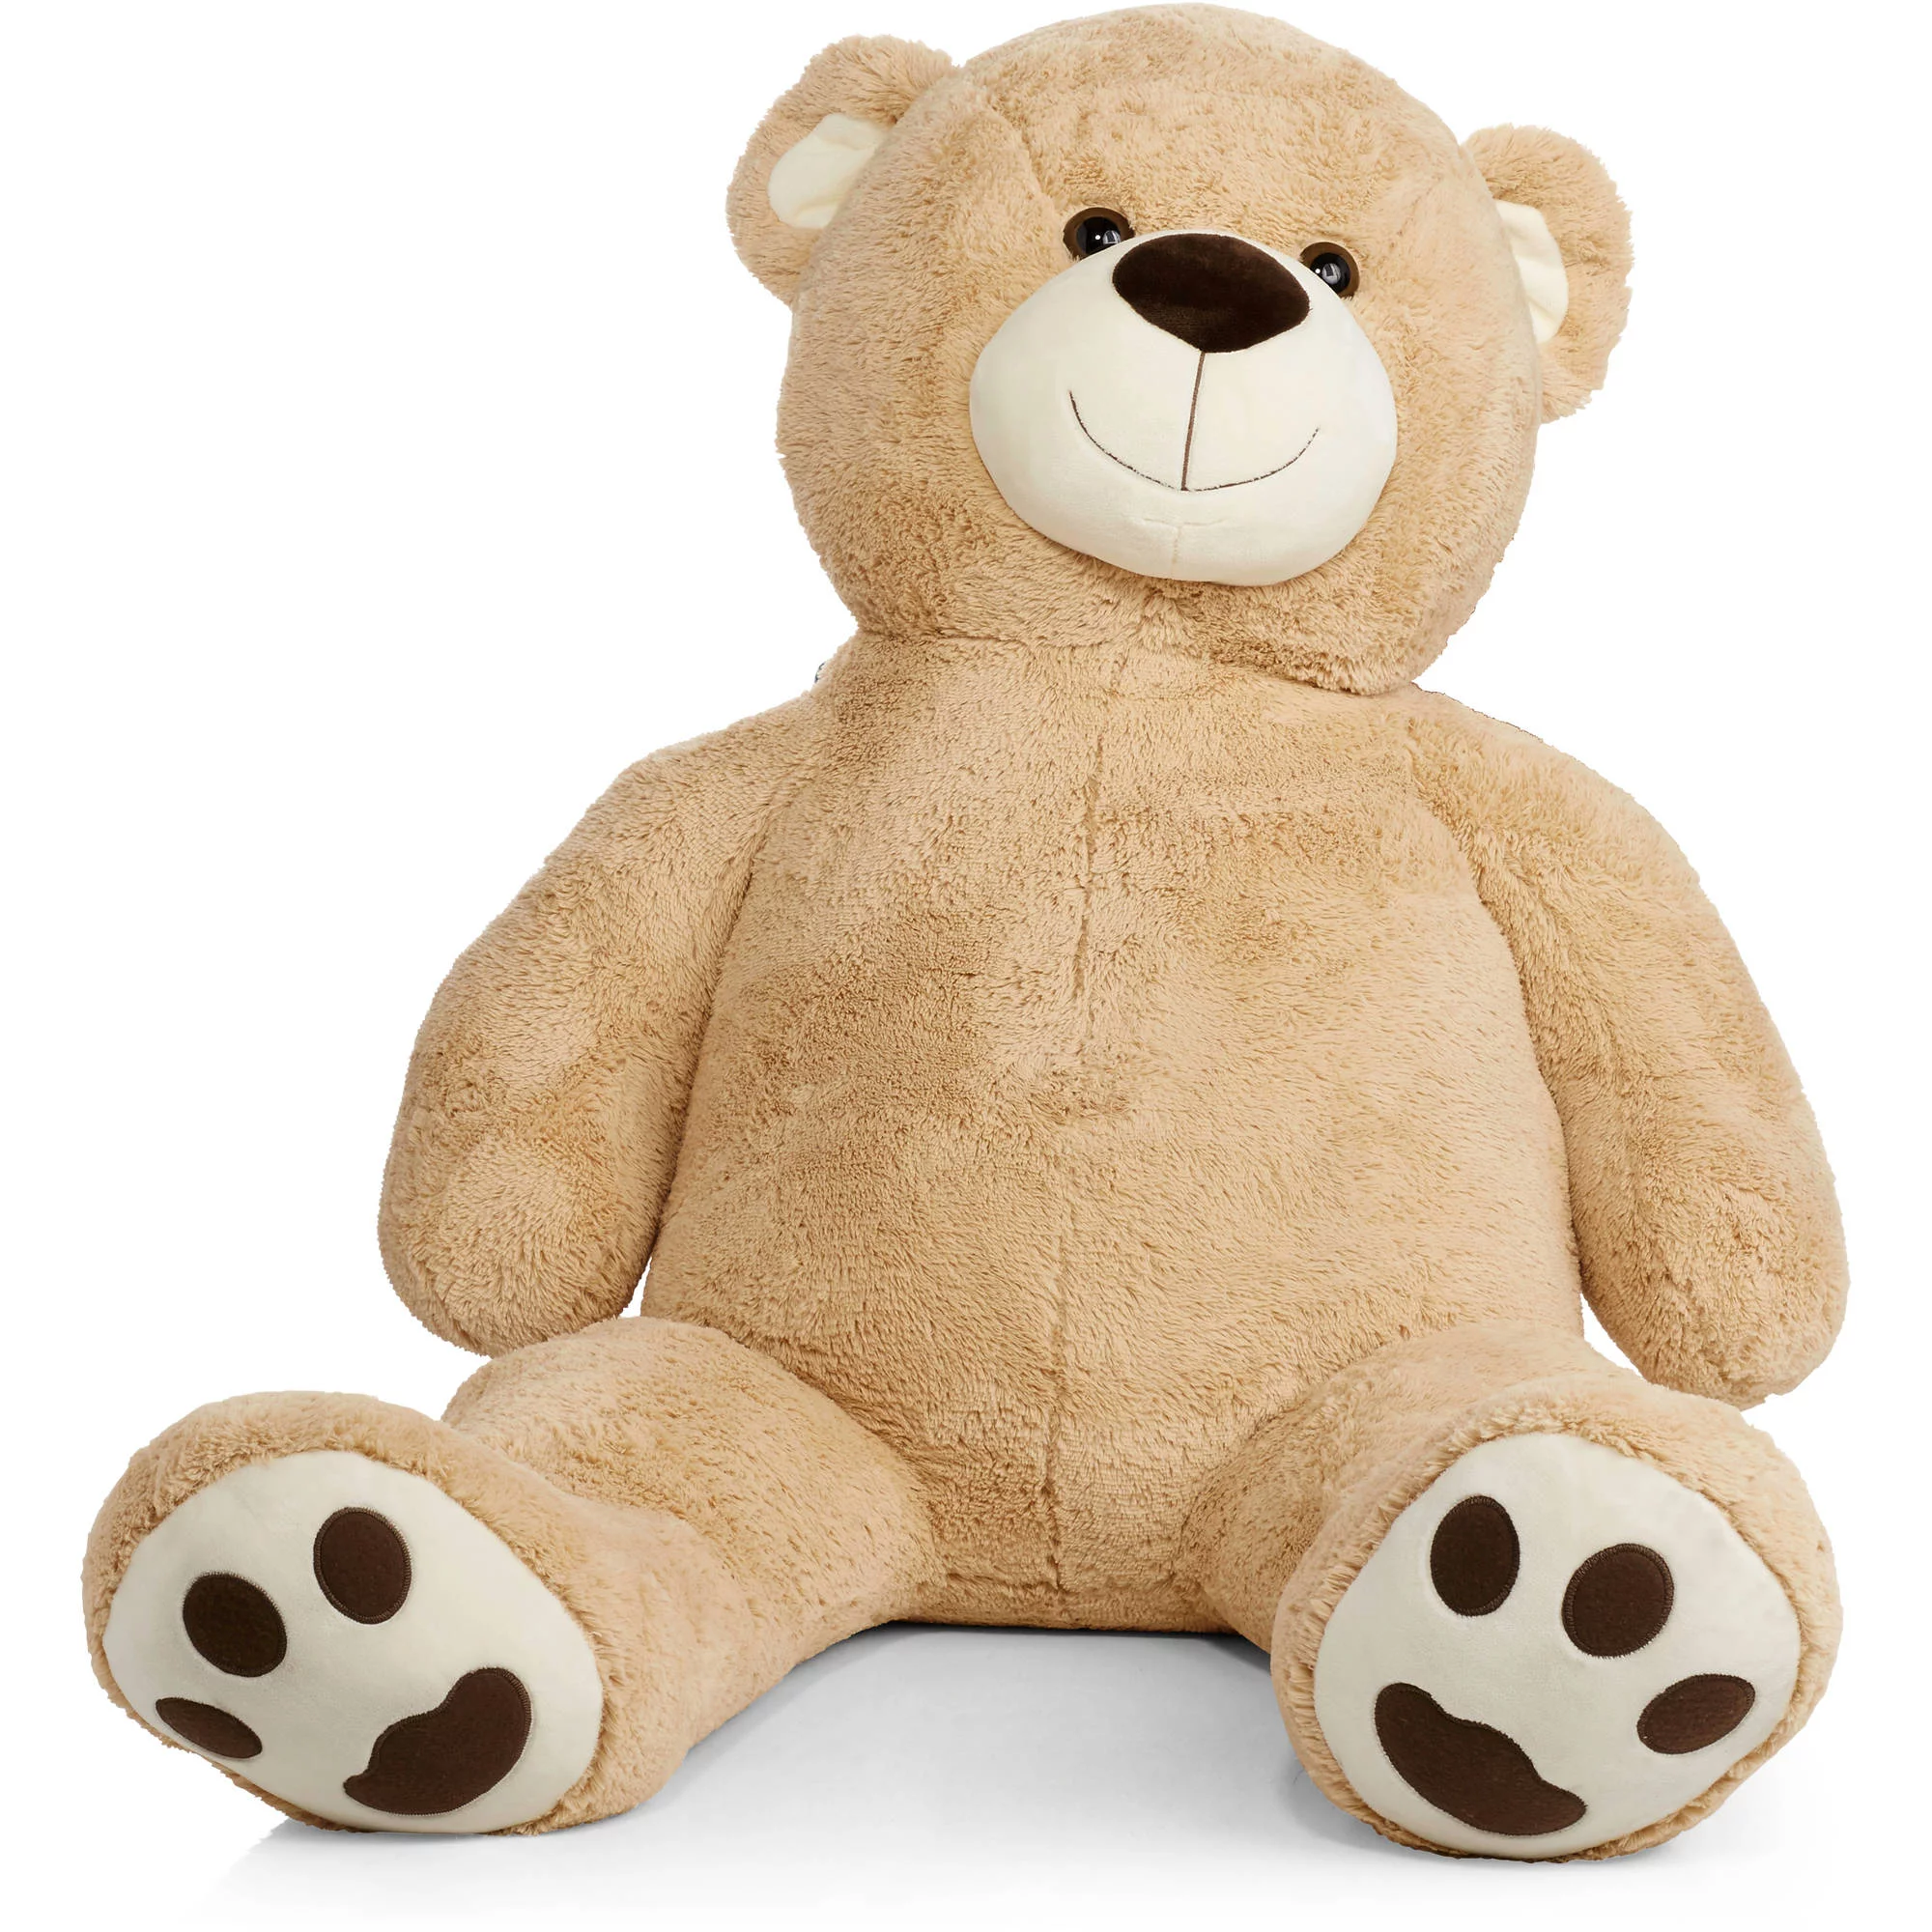 cheap 6ft teddy bear